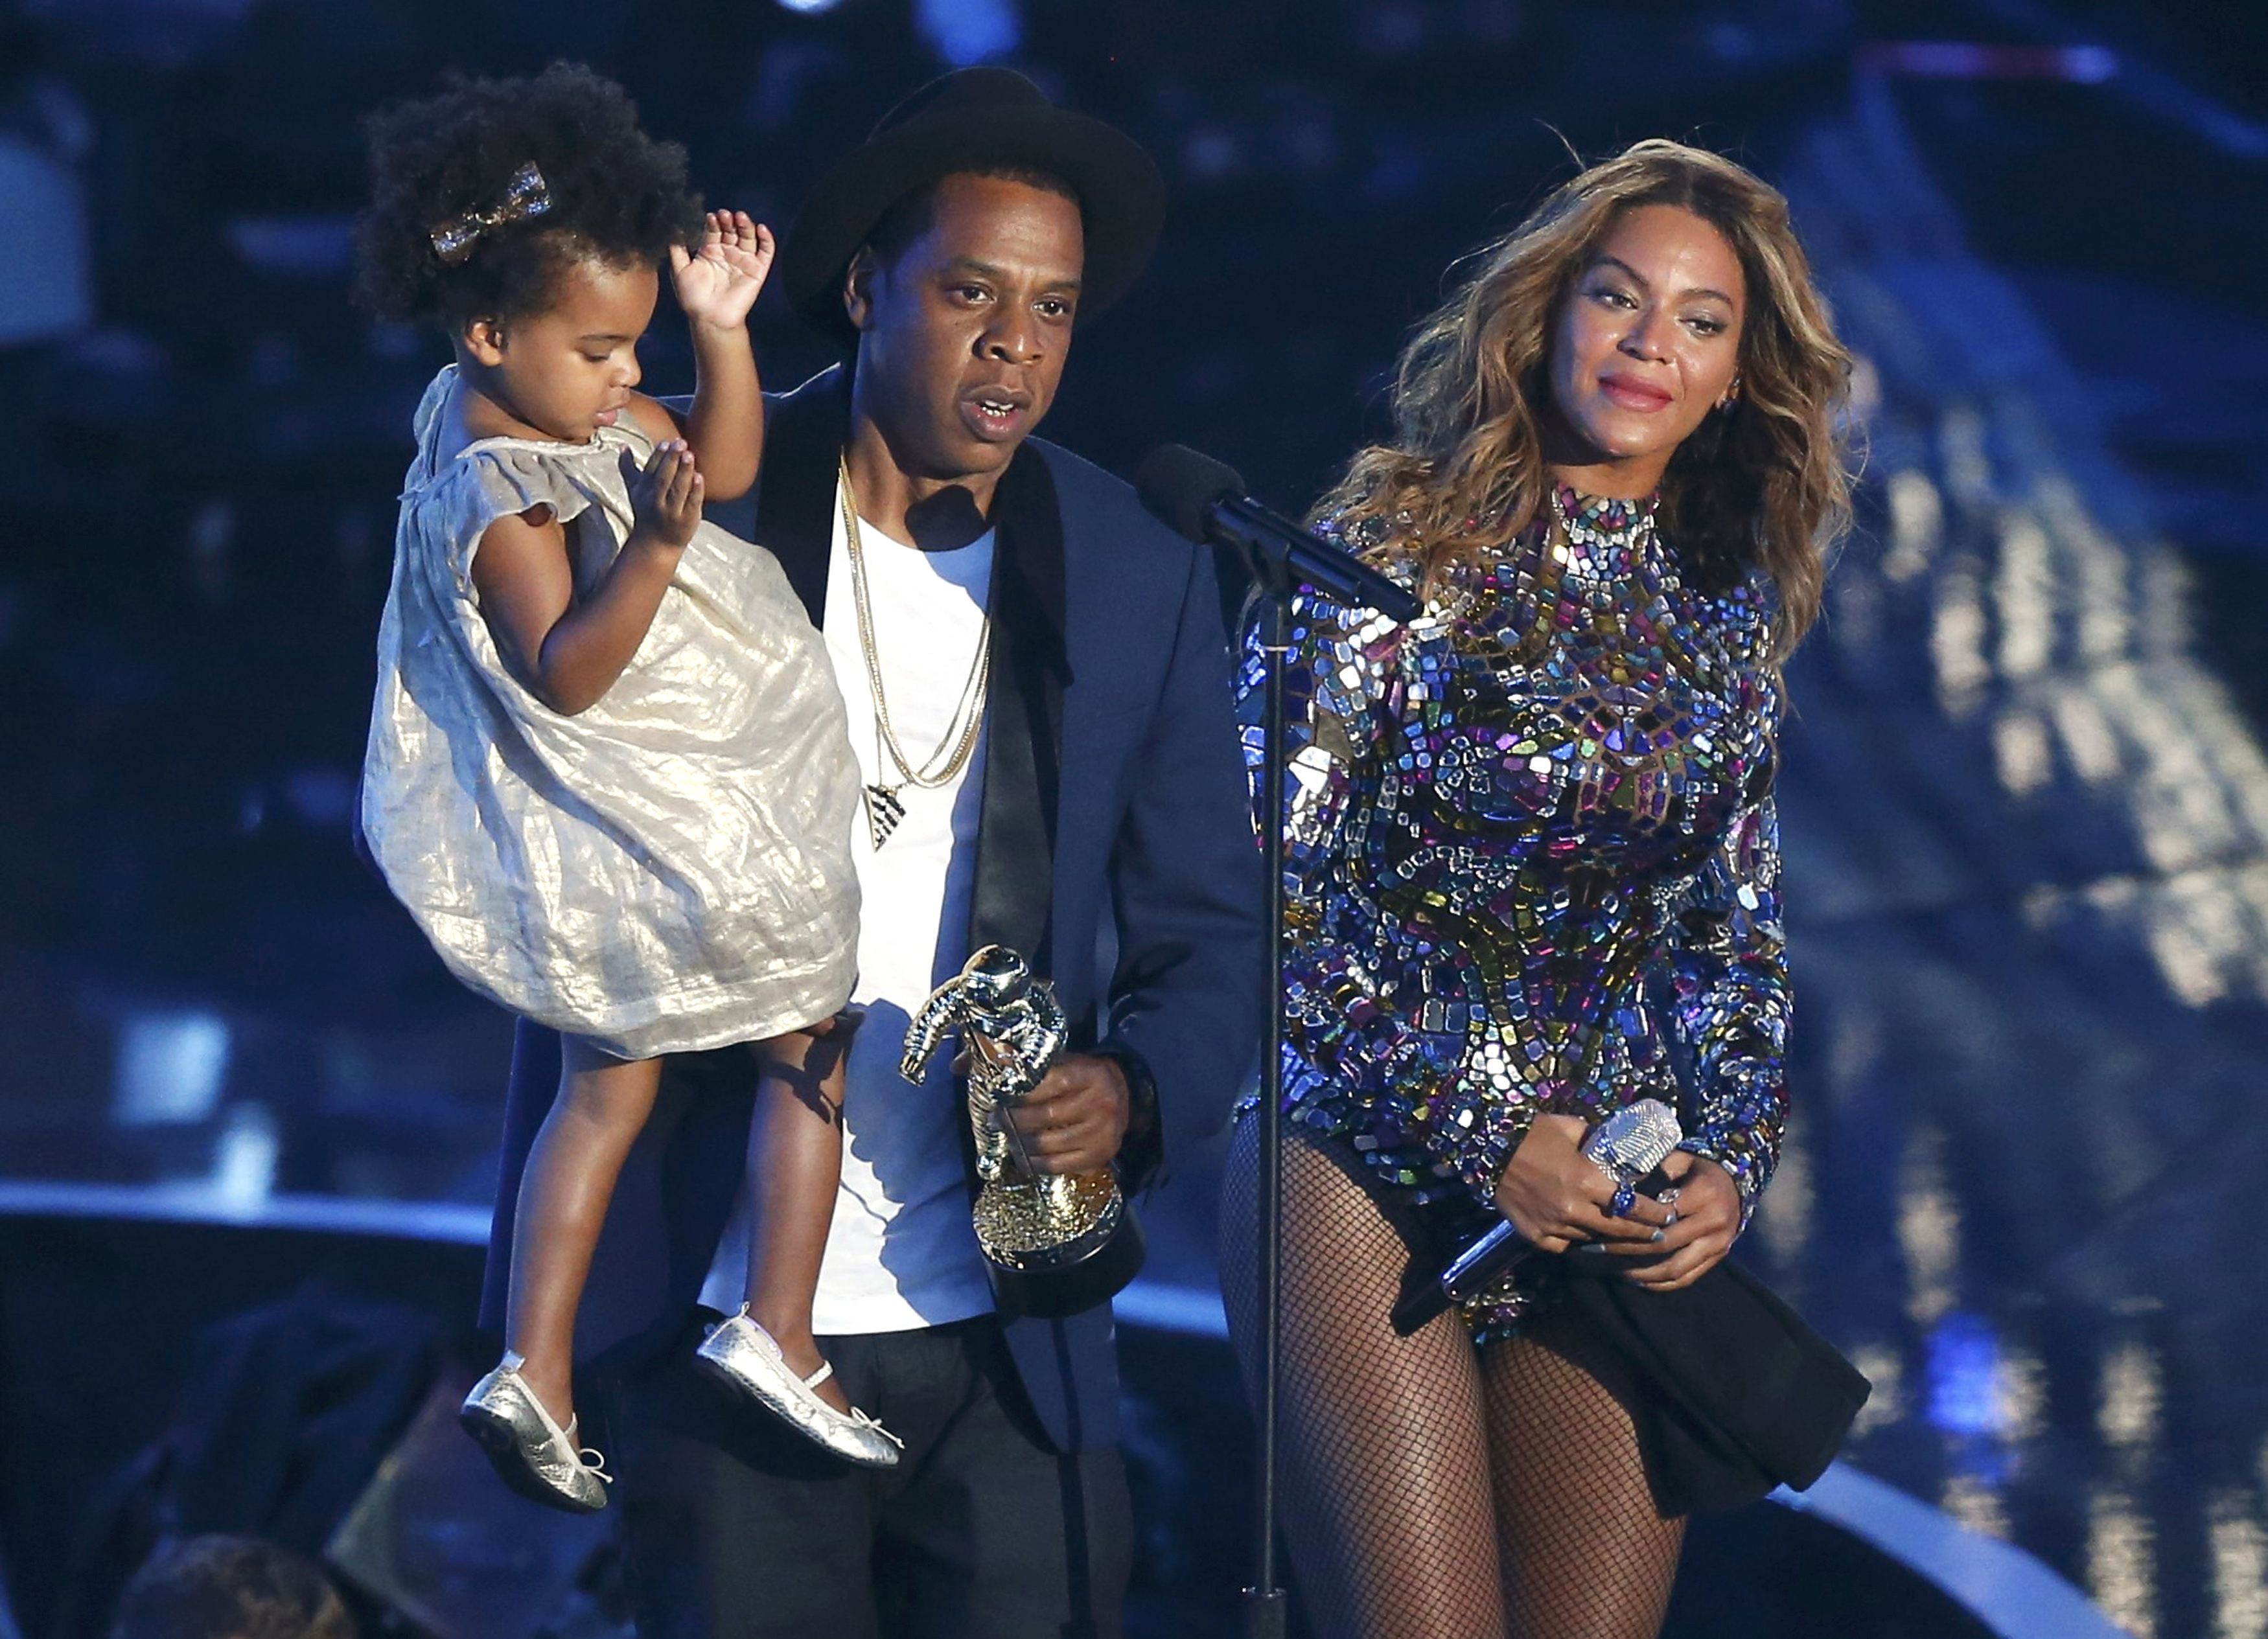 Las lágrimas de Beyoncé, la marcha de las Kardashian… las curiosidades de los premios MTV